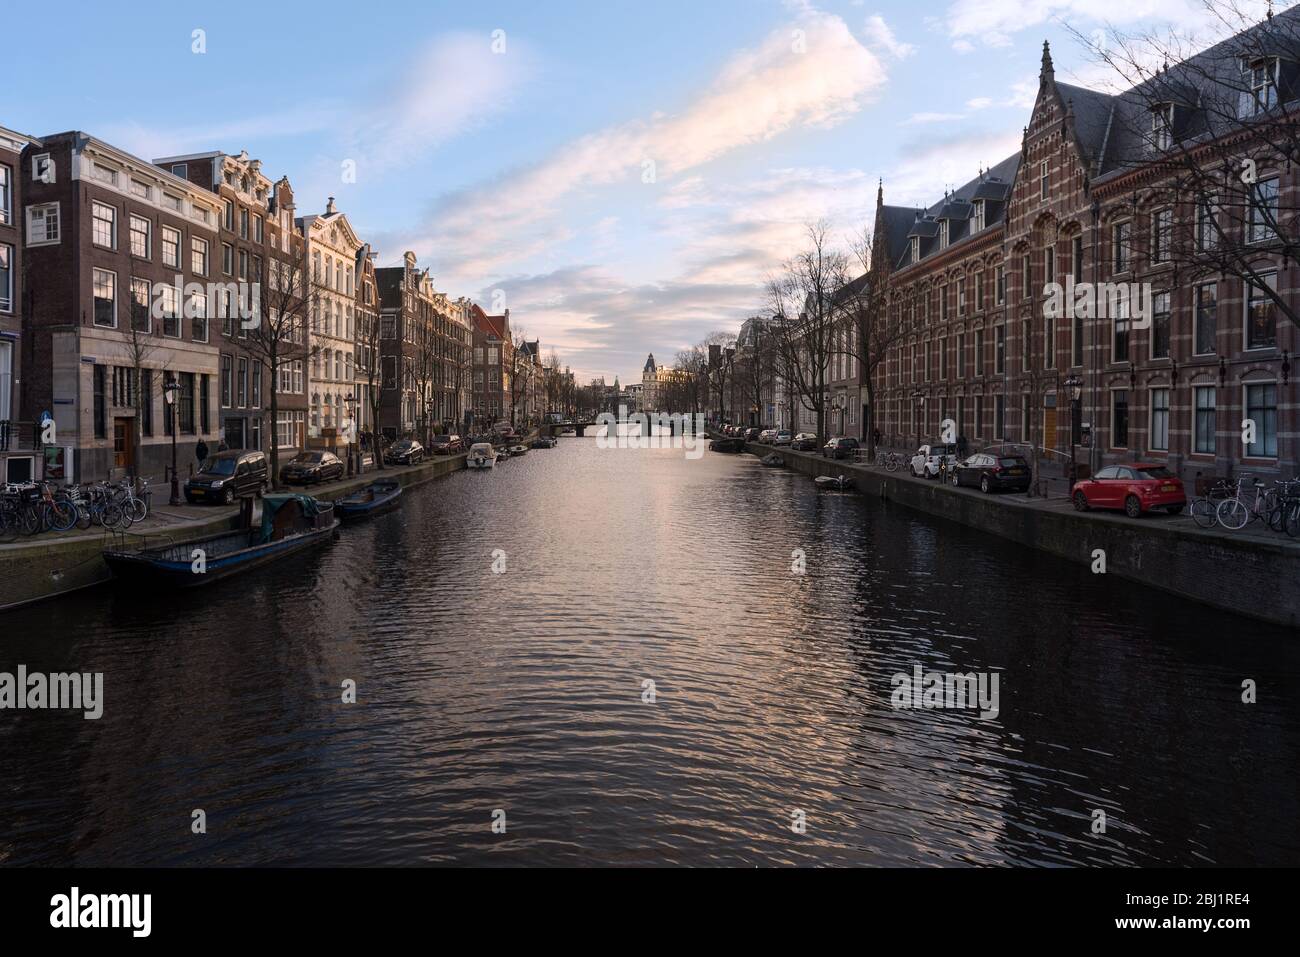 Maisons historiques et bâtiments d'une grande partie du réseau de canaux d'Amsterdam, Pays-Bas. Banque D'Images